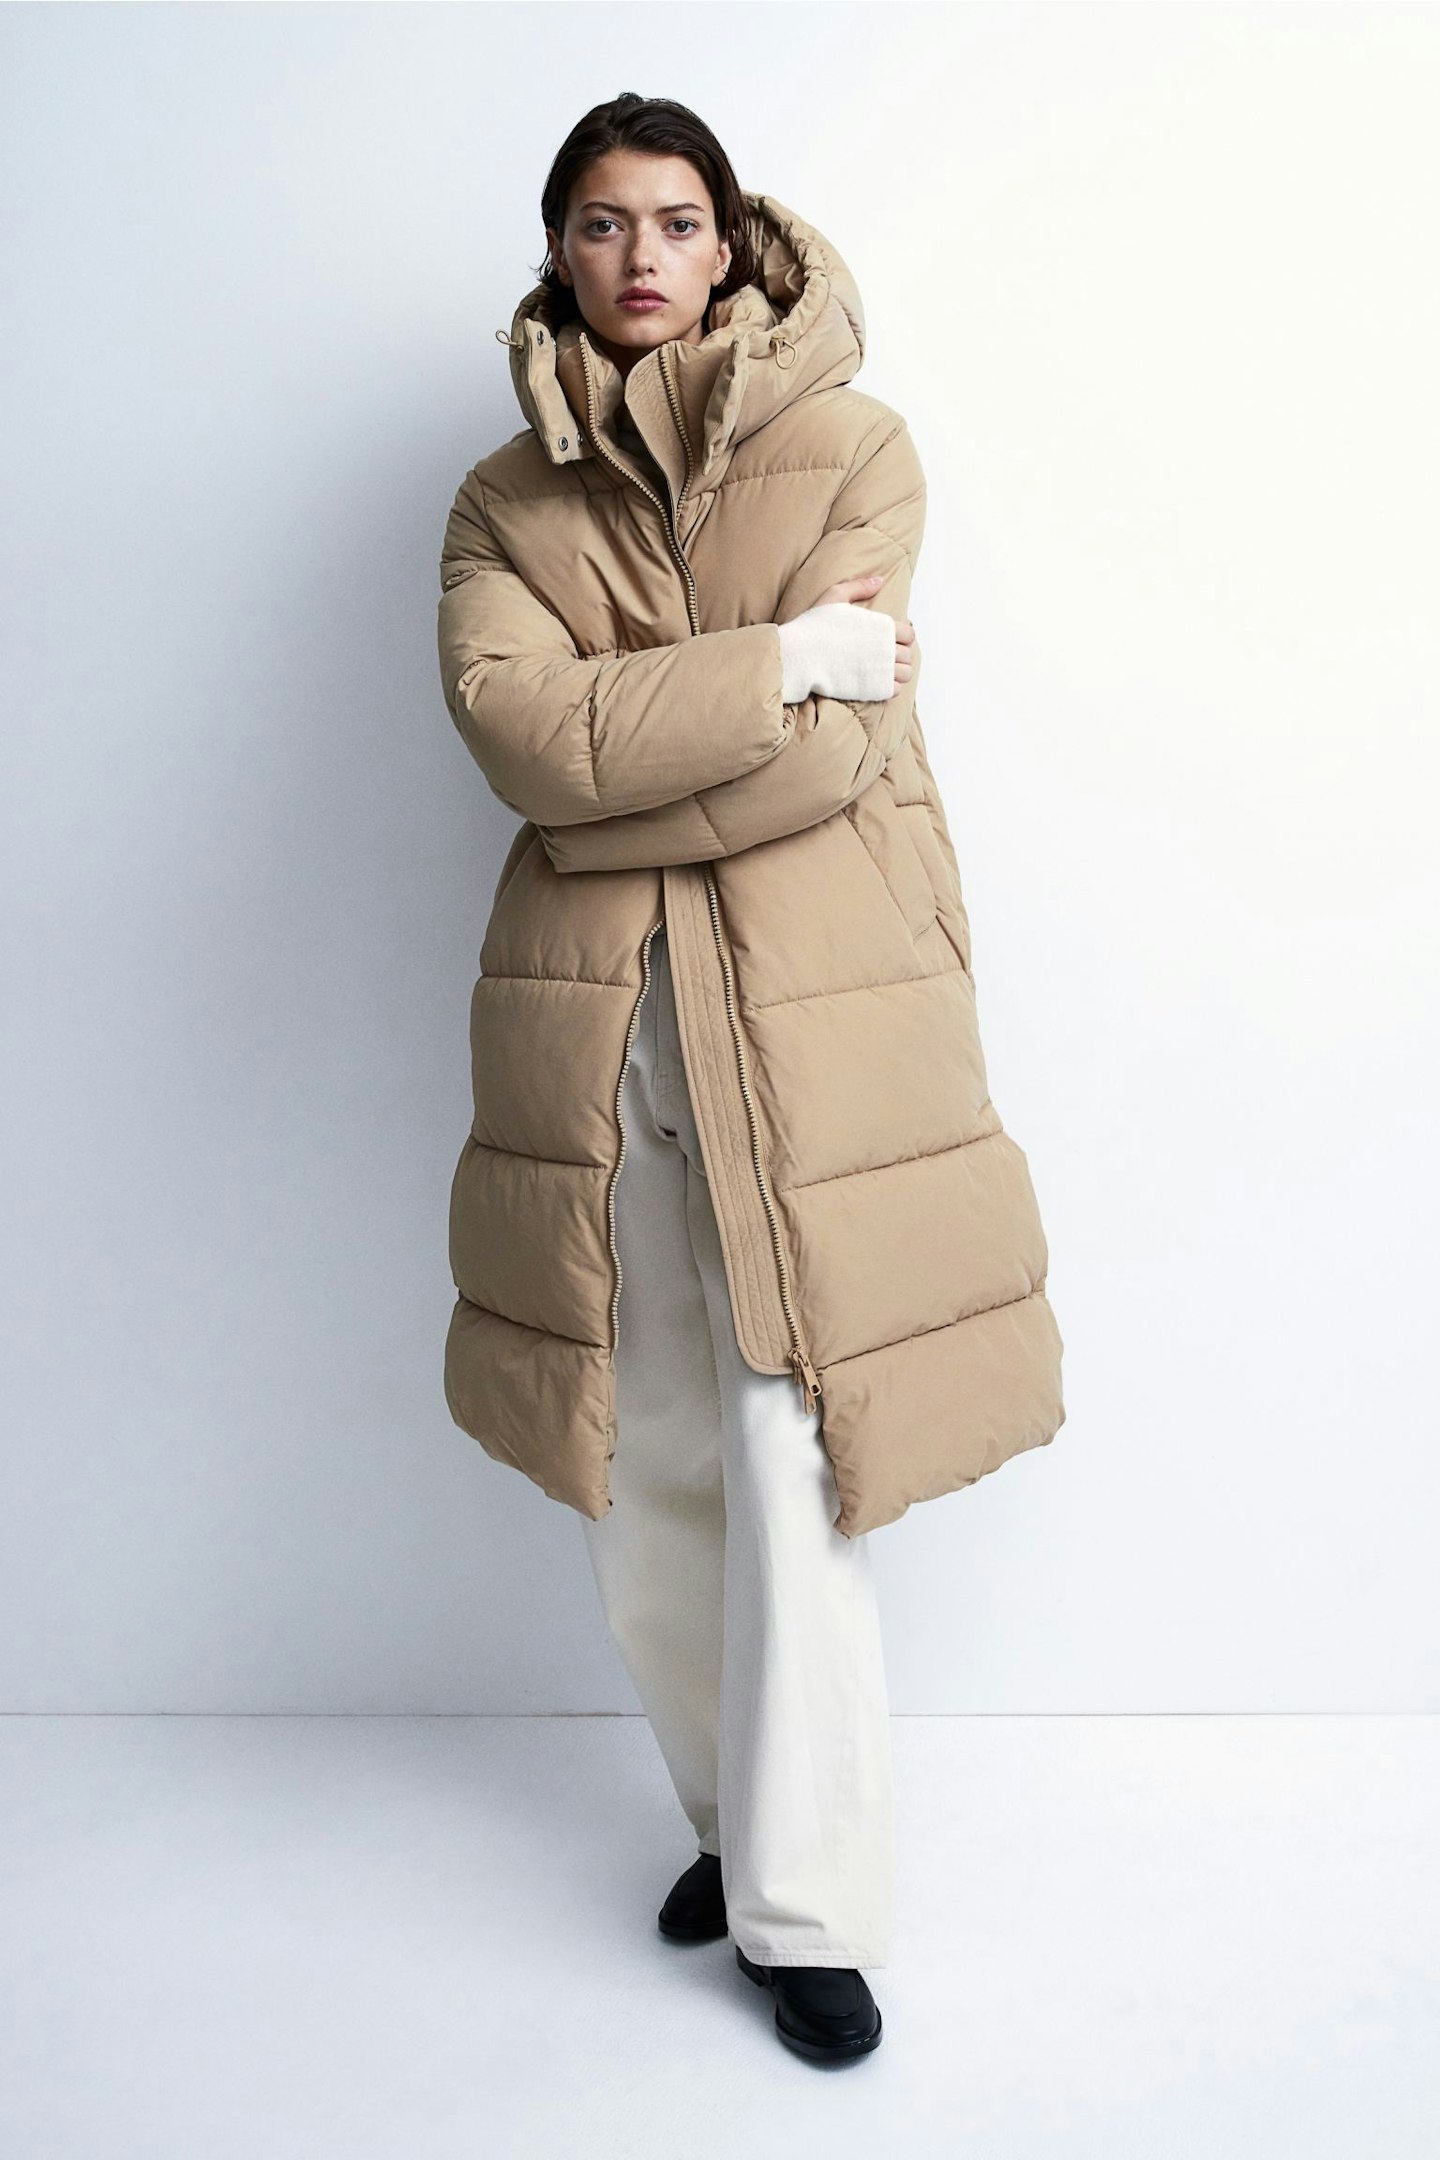 Model wearing beige longline puffer coat